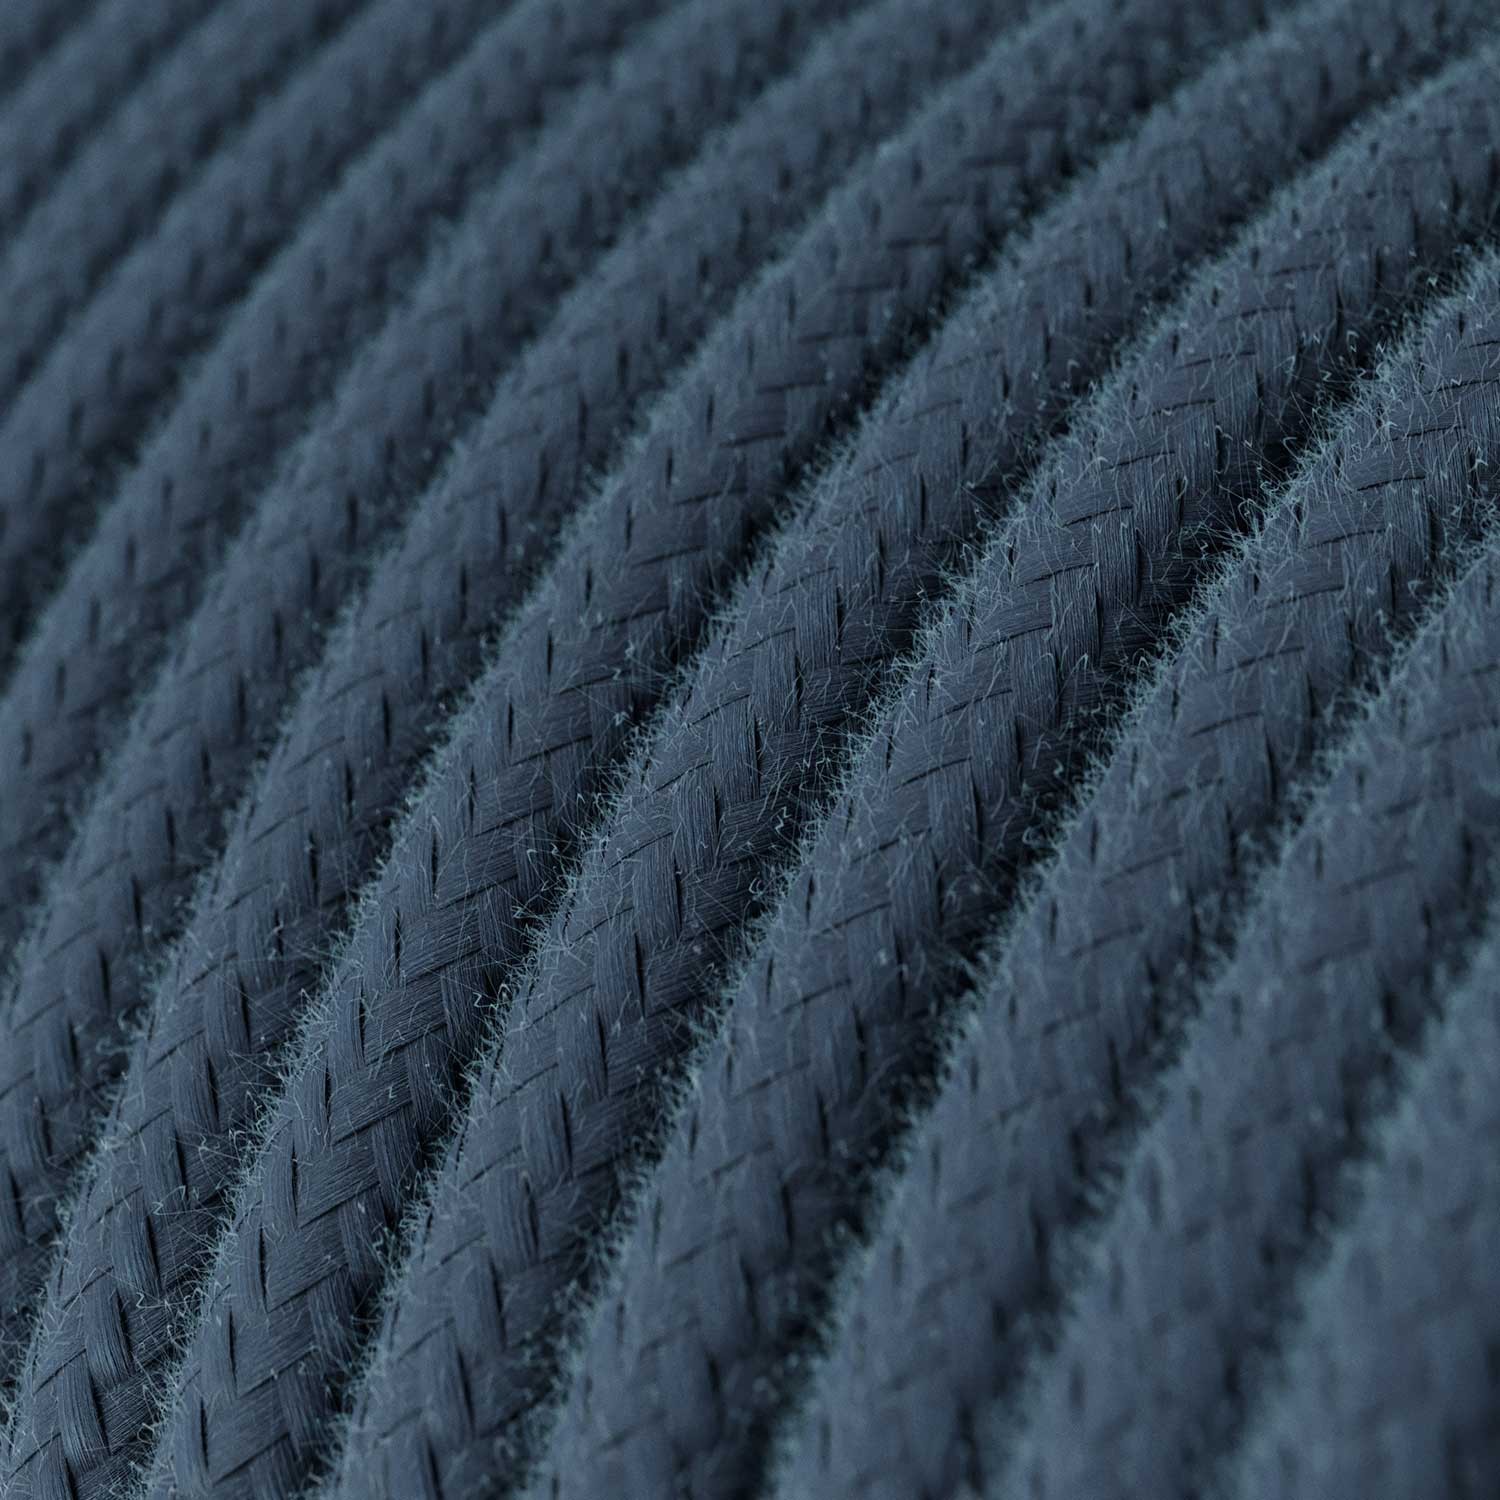 Okrúhly textilný elektrický kábel, bavlna, jednofarebný, RC30 Kameňovo šedá